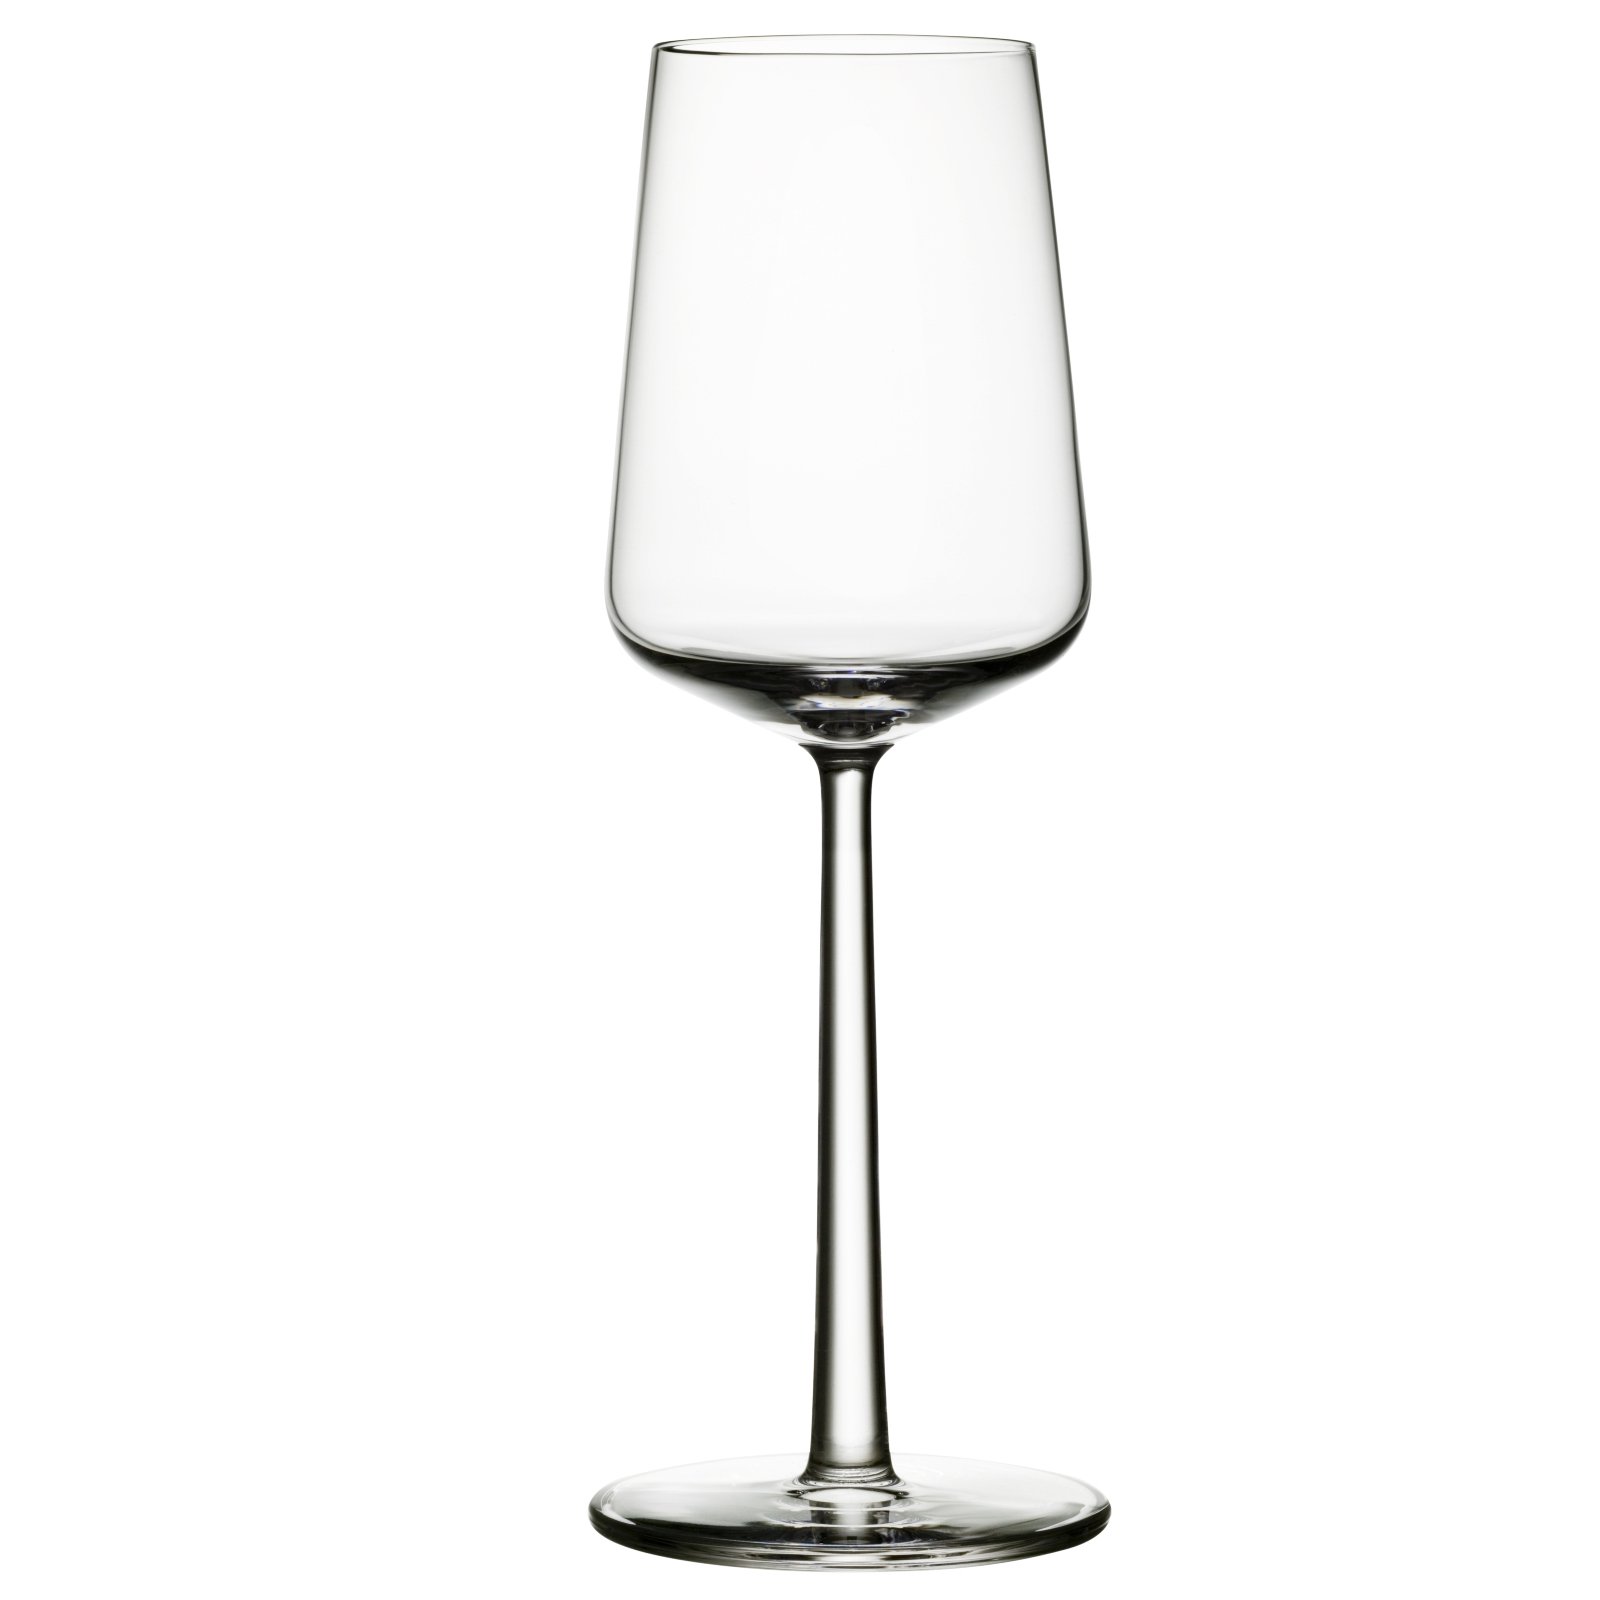 Essence White Wine Glasses- 4 in box